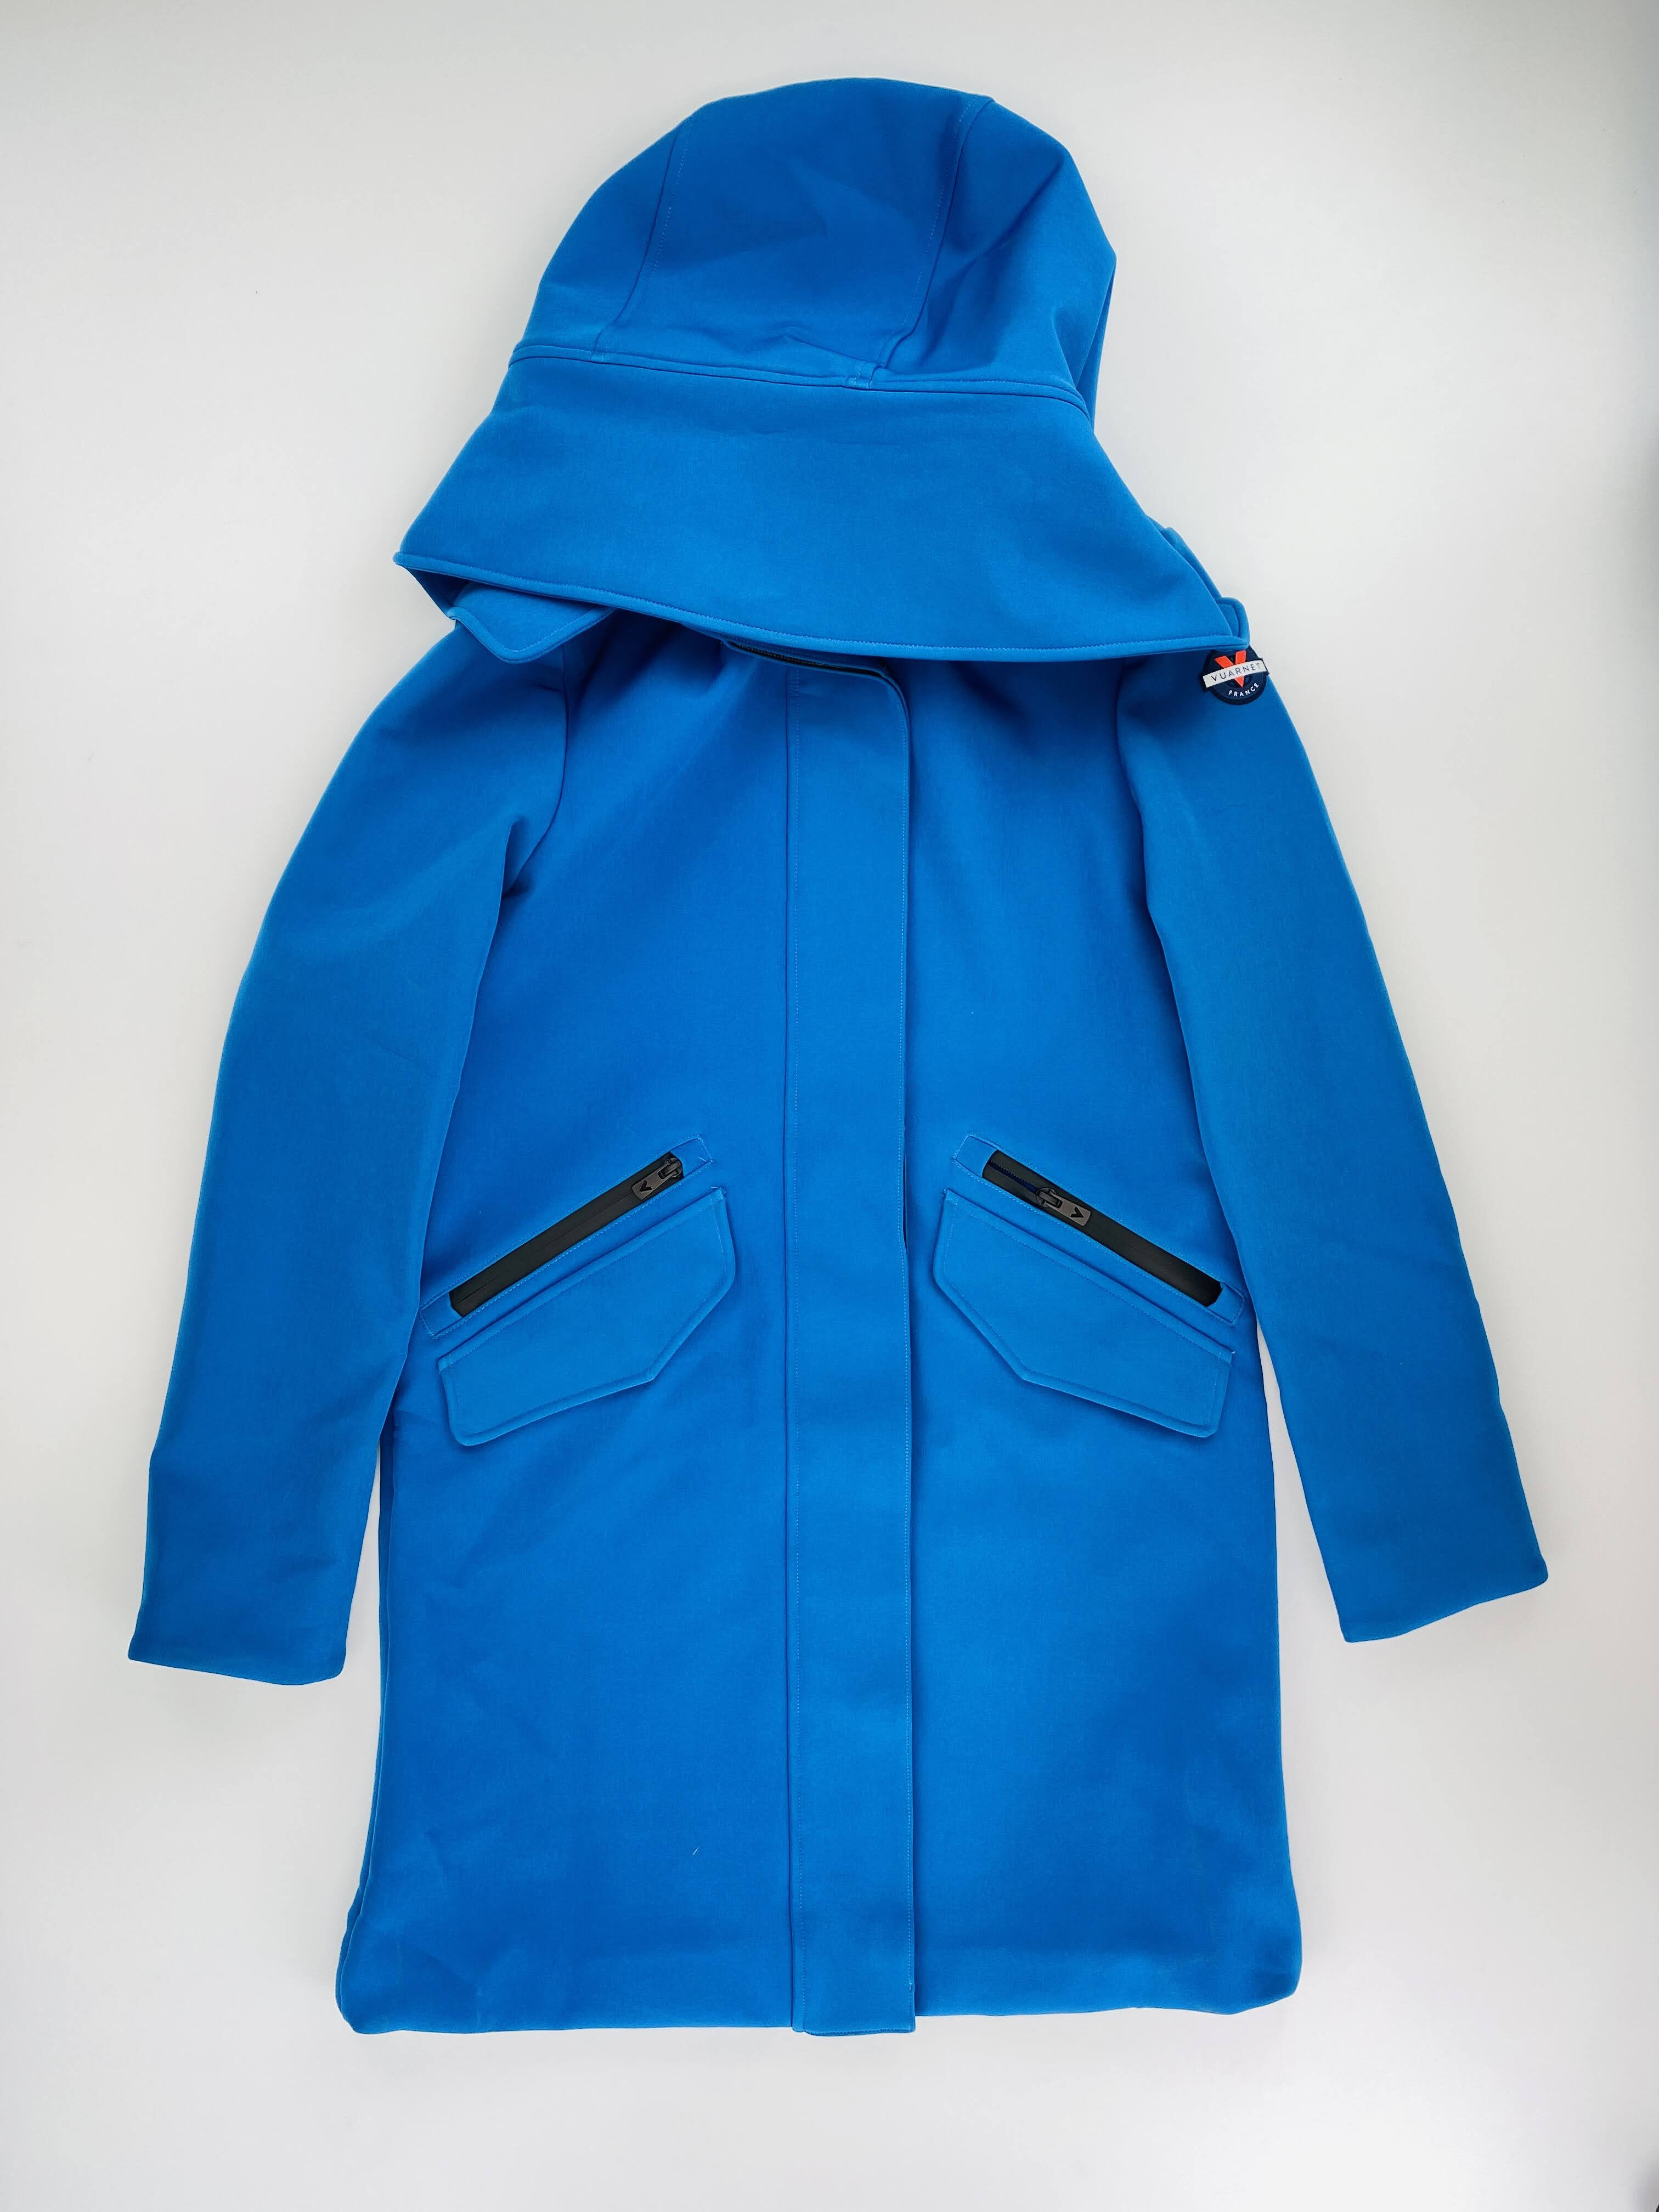 Vuarnet Laren Jacket - Second Hand Jacket - Women's - Blue - S | Hardloop